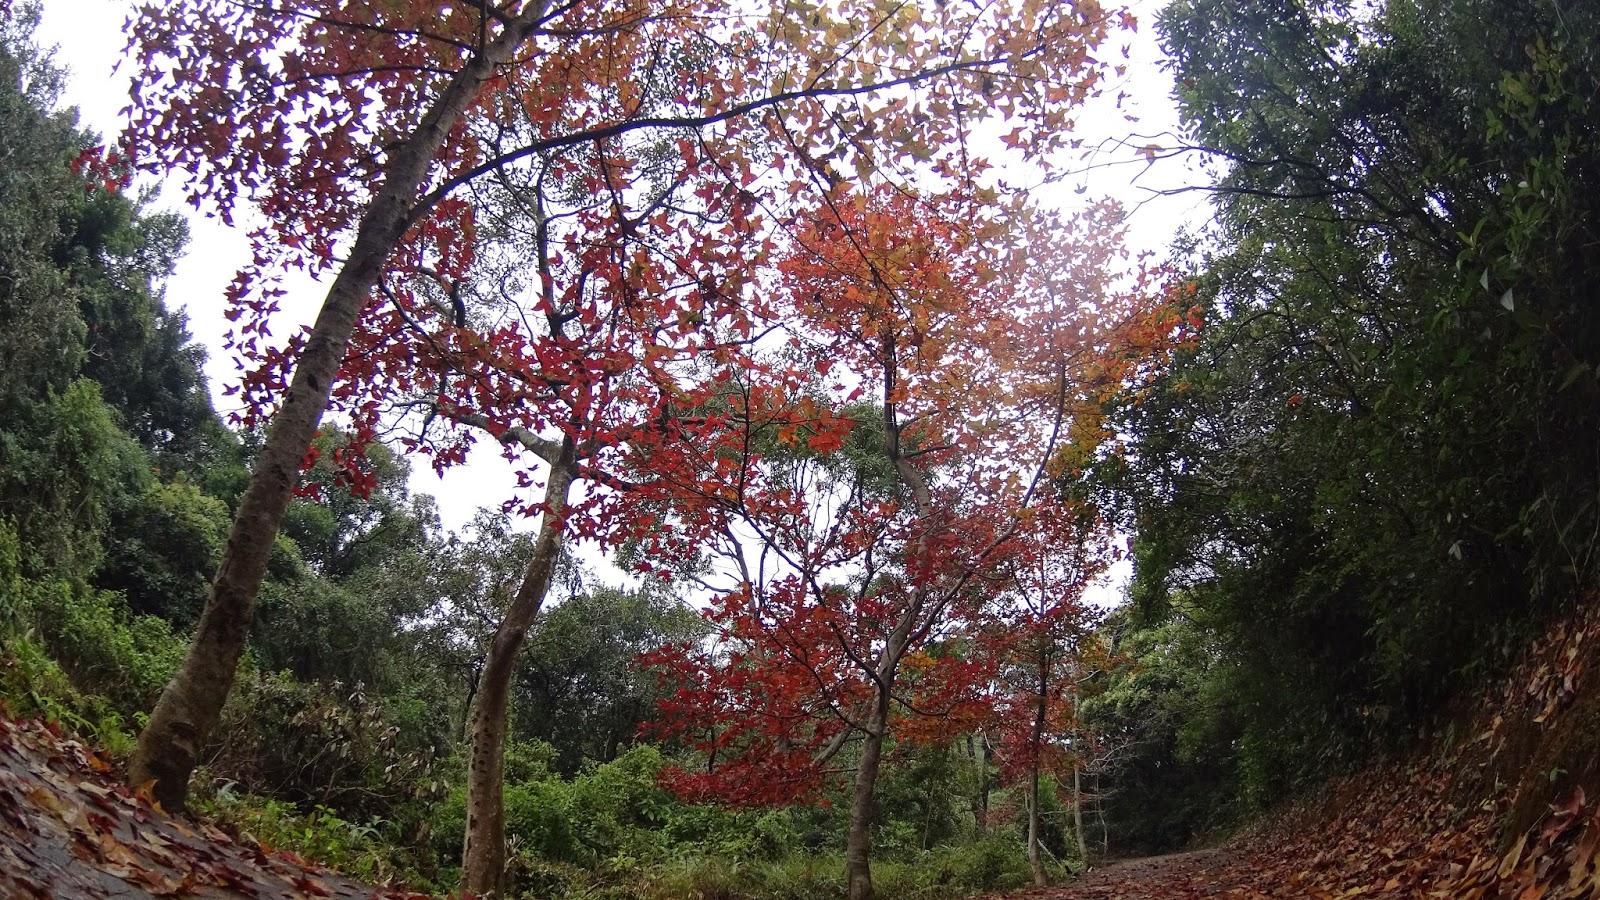 位於清快塘村門外大樹長滿的紅葉